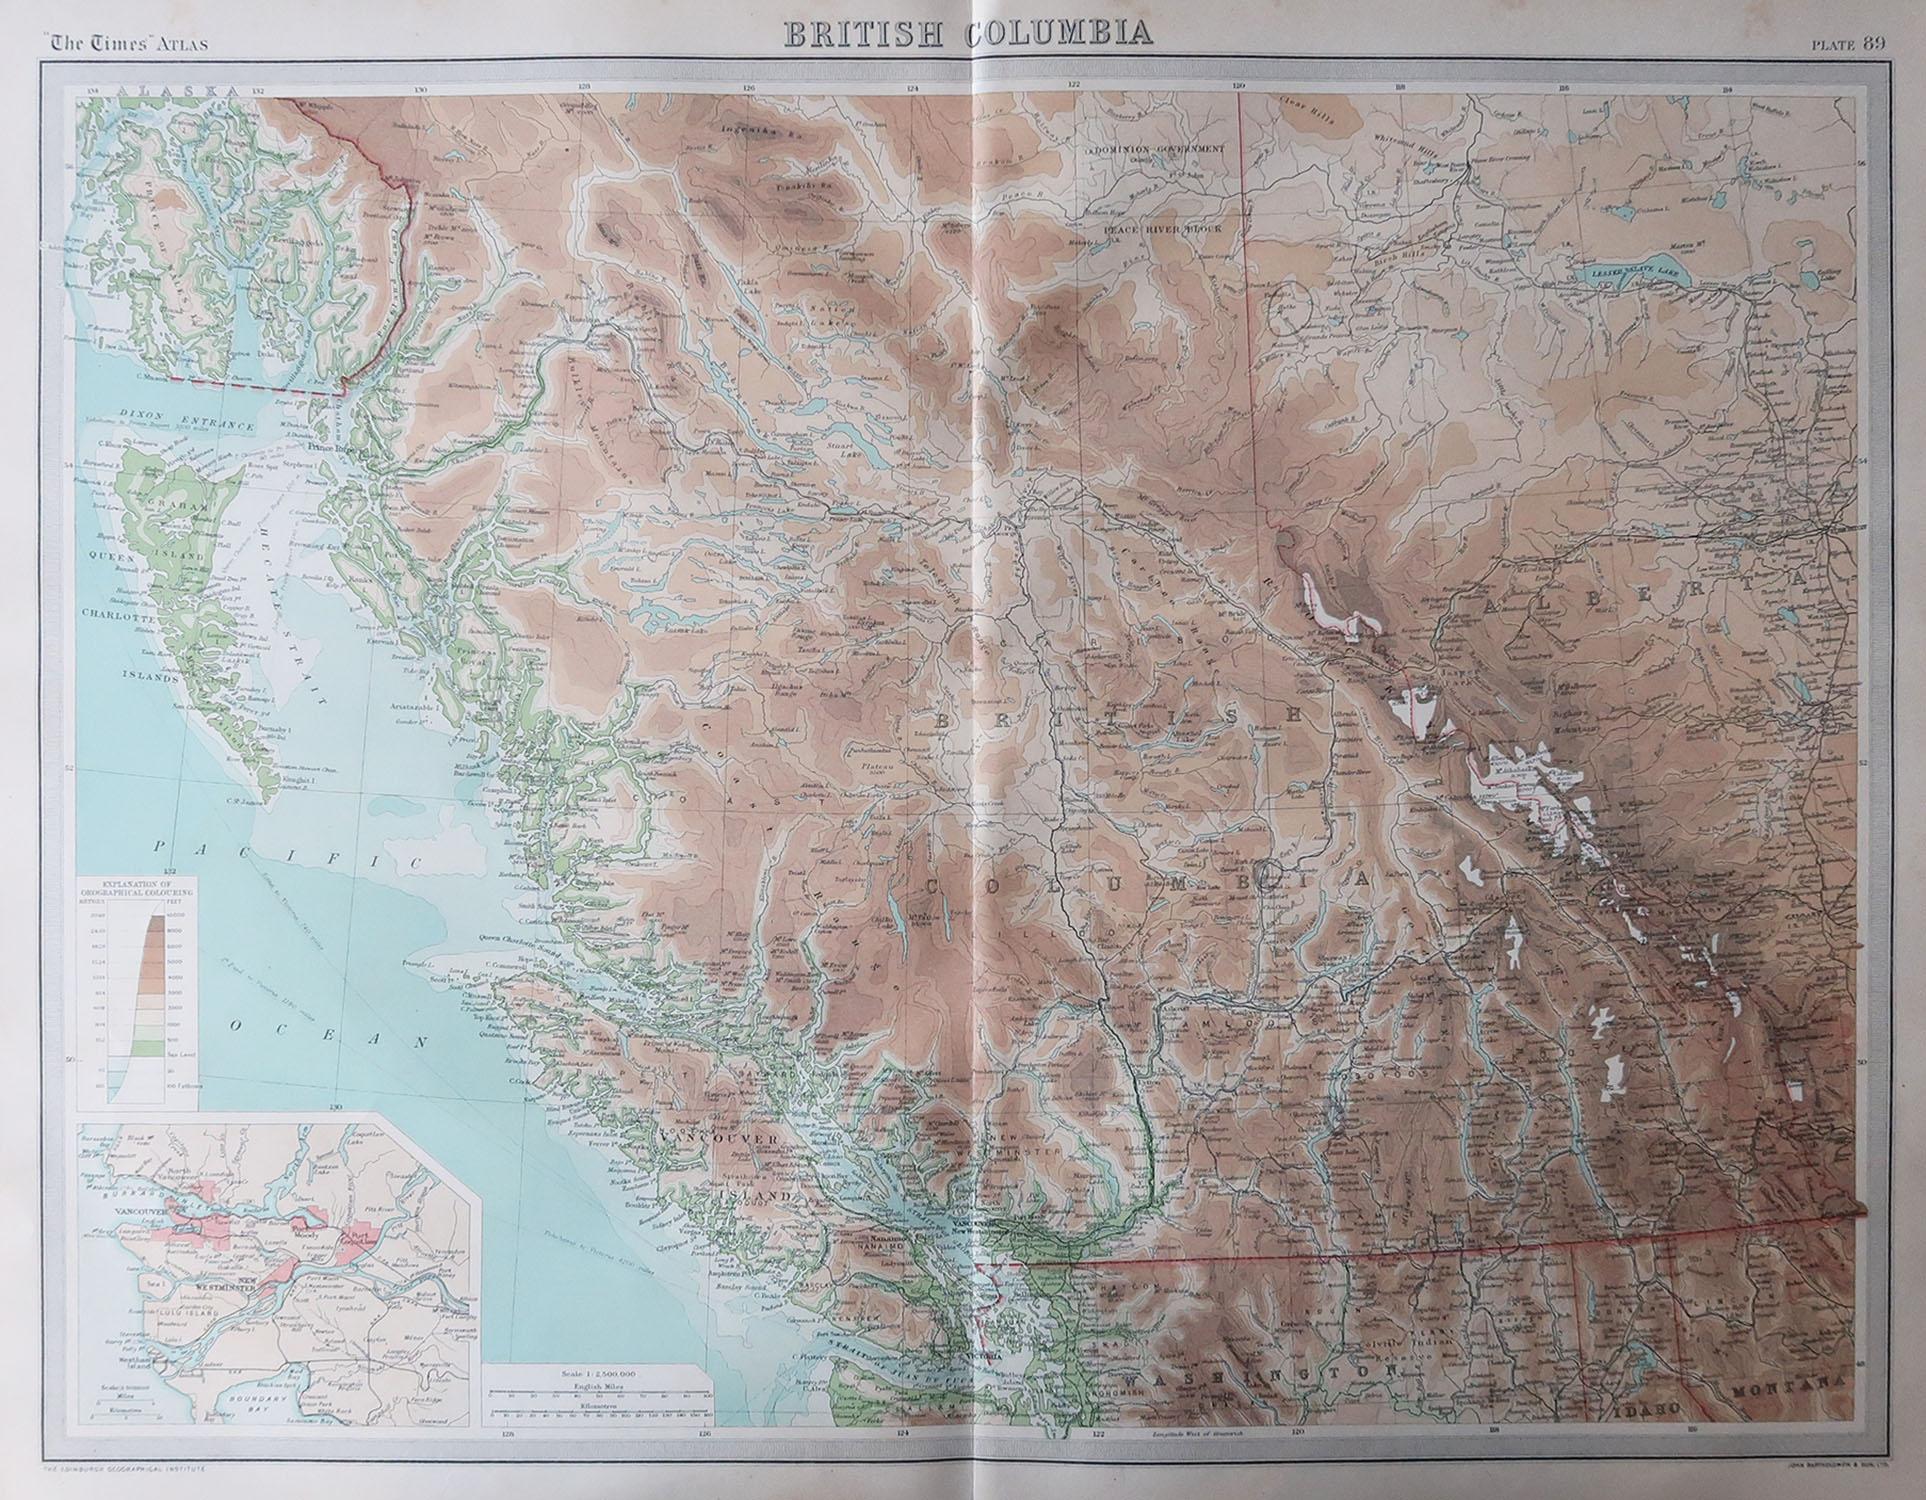 Tolle Karte von Britisch-Kolumbien

Ungerahmt

Original Farbe

Von John Bartholomew und Co. Geographisches Institut Edinburgh

Veröffentlicht, um 1920

Kostenloser Versand.
 